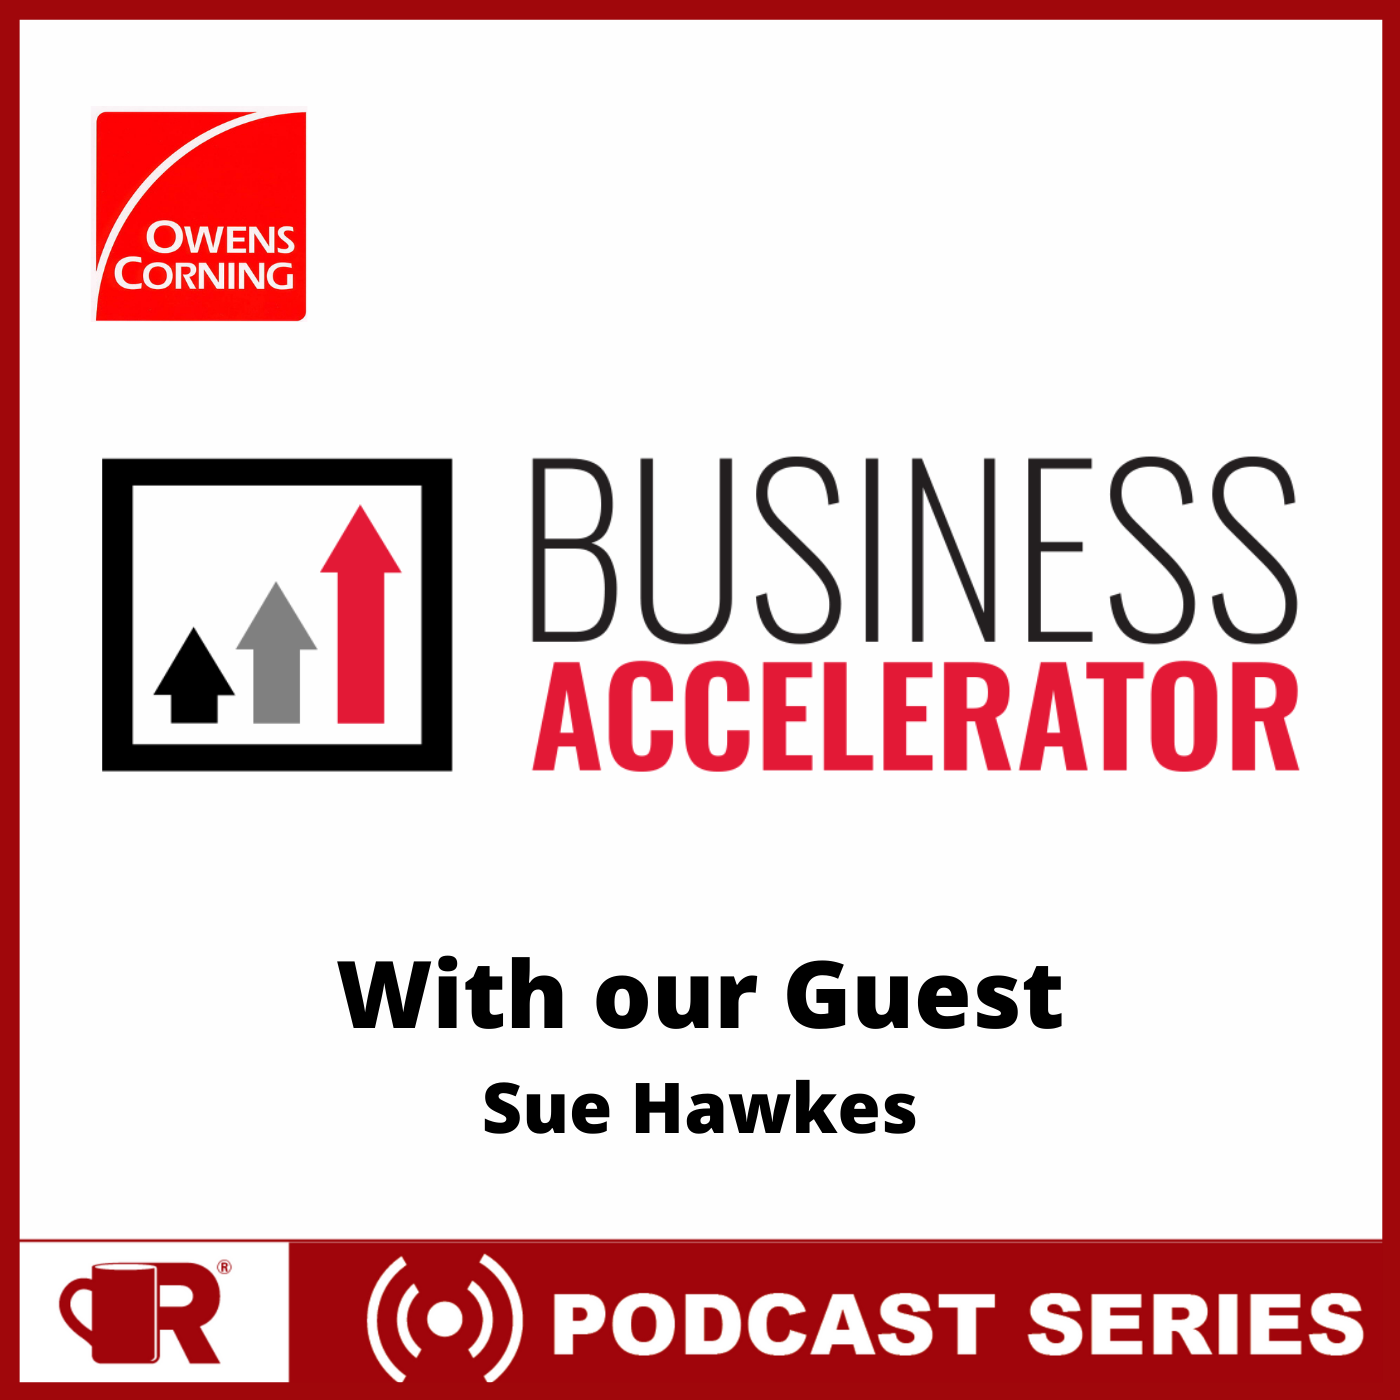 Podcast - Sue Hawkes